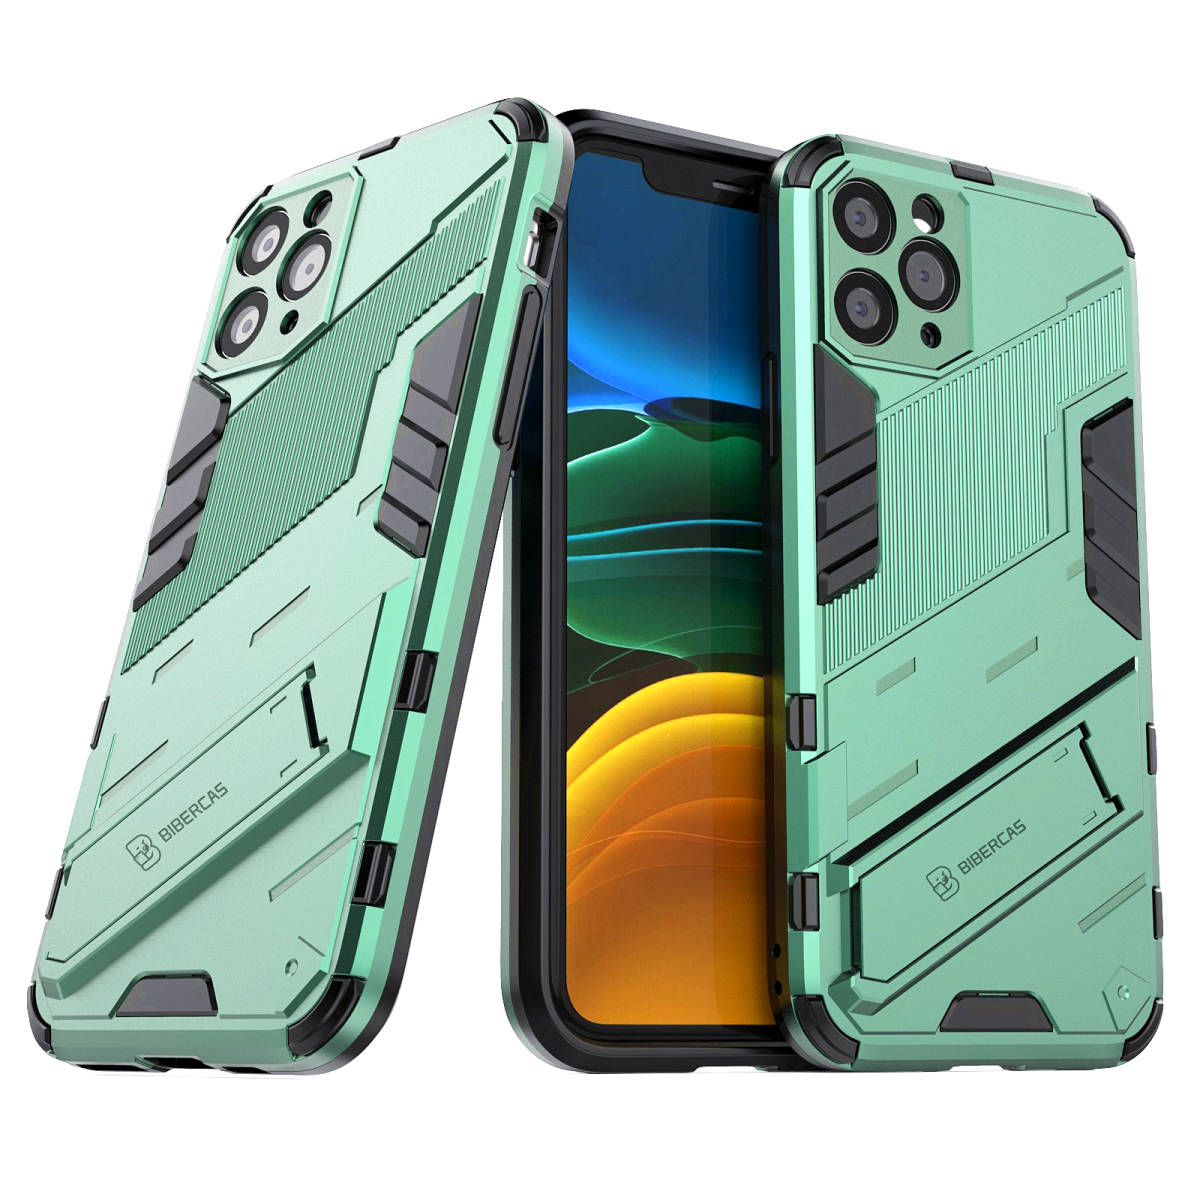 B在庫処分 緑 iPhone 11 Pro Max ケース 本体 カバー 画面 保護 守る アイフォン 米軍 耐衝撃 頑丈 スタンド ホルダー 最強 Apple アップル_画像1